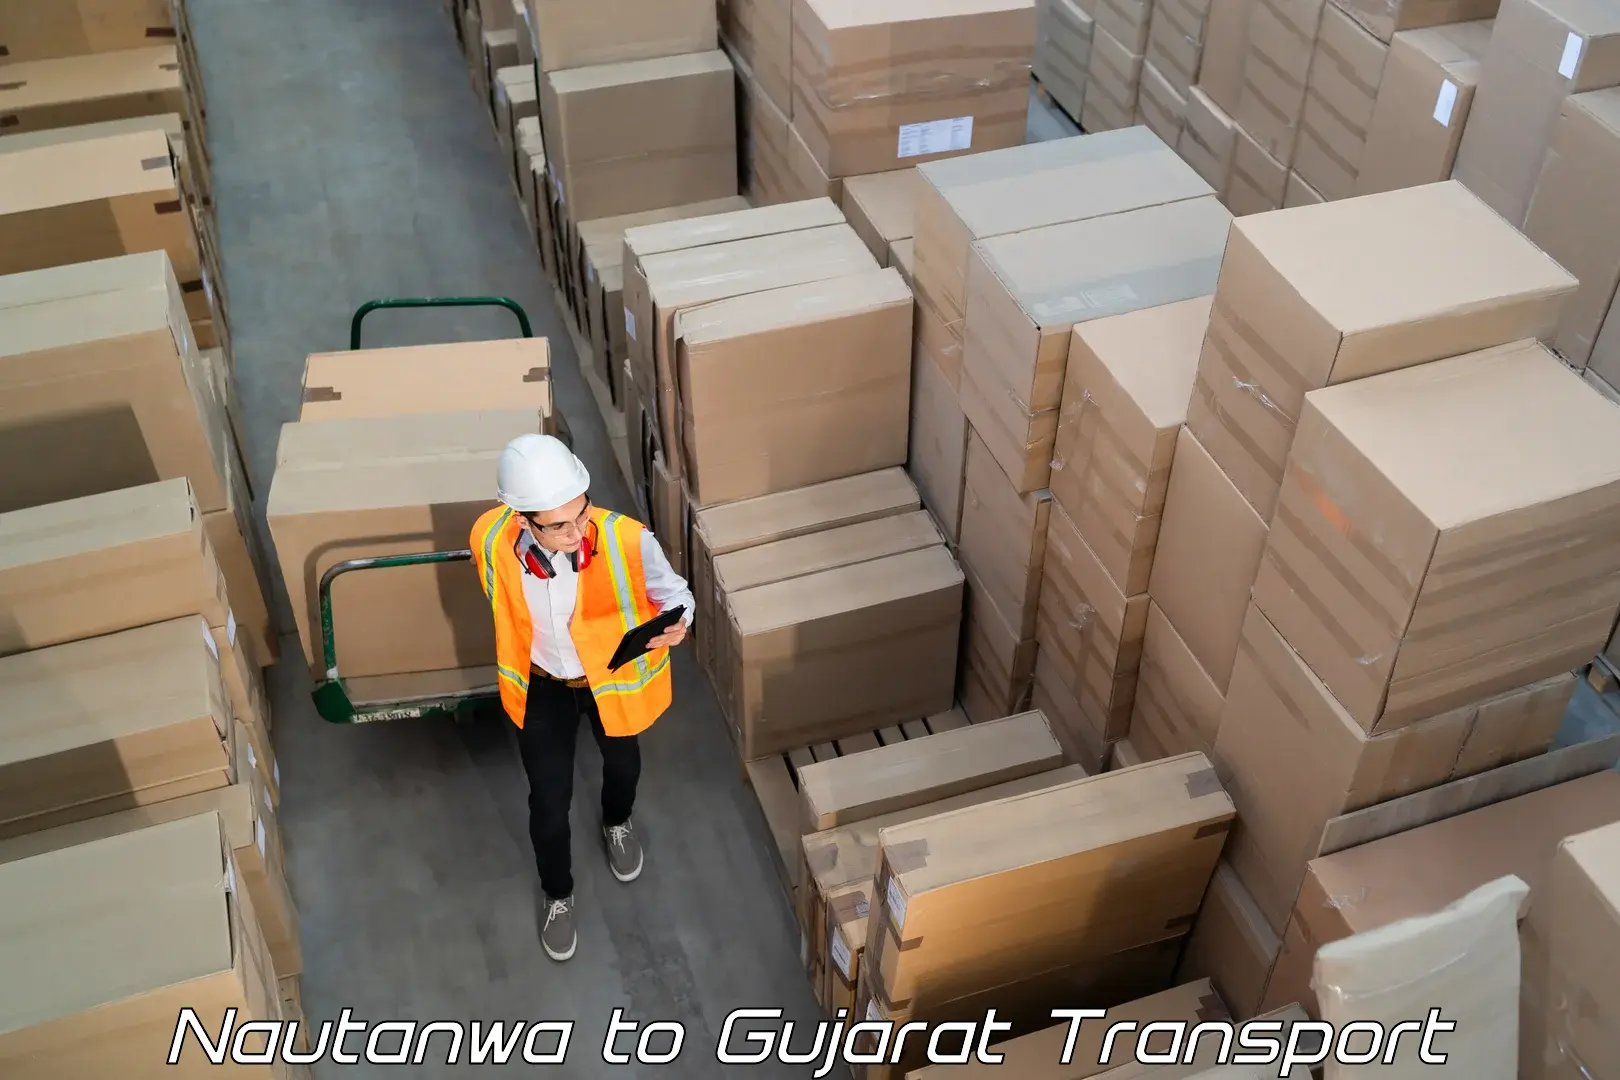 Cargo transportation services Nautanwa to Khambhat